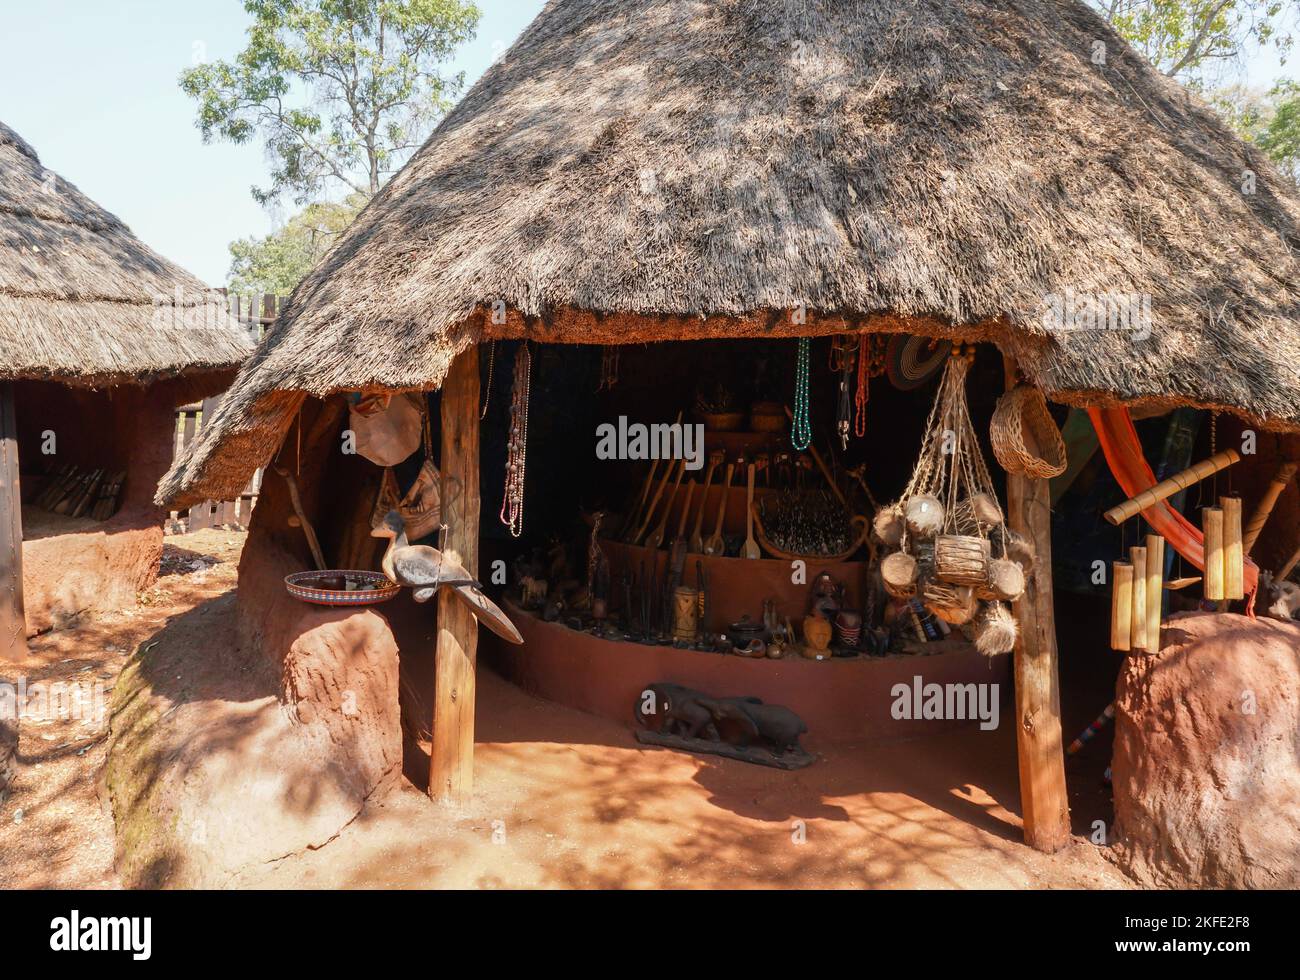 Aldea cultural shangaan Cabaña tradicional africana de paja con recuerdos o recuerdos colgando afuera en exhibición para que los turistas compren en Sudáfrica Foto de stock